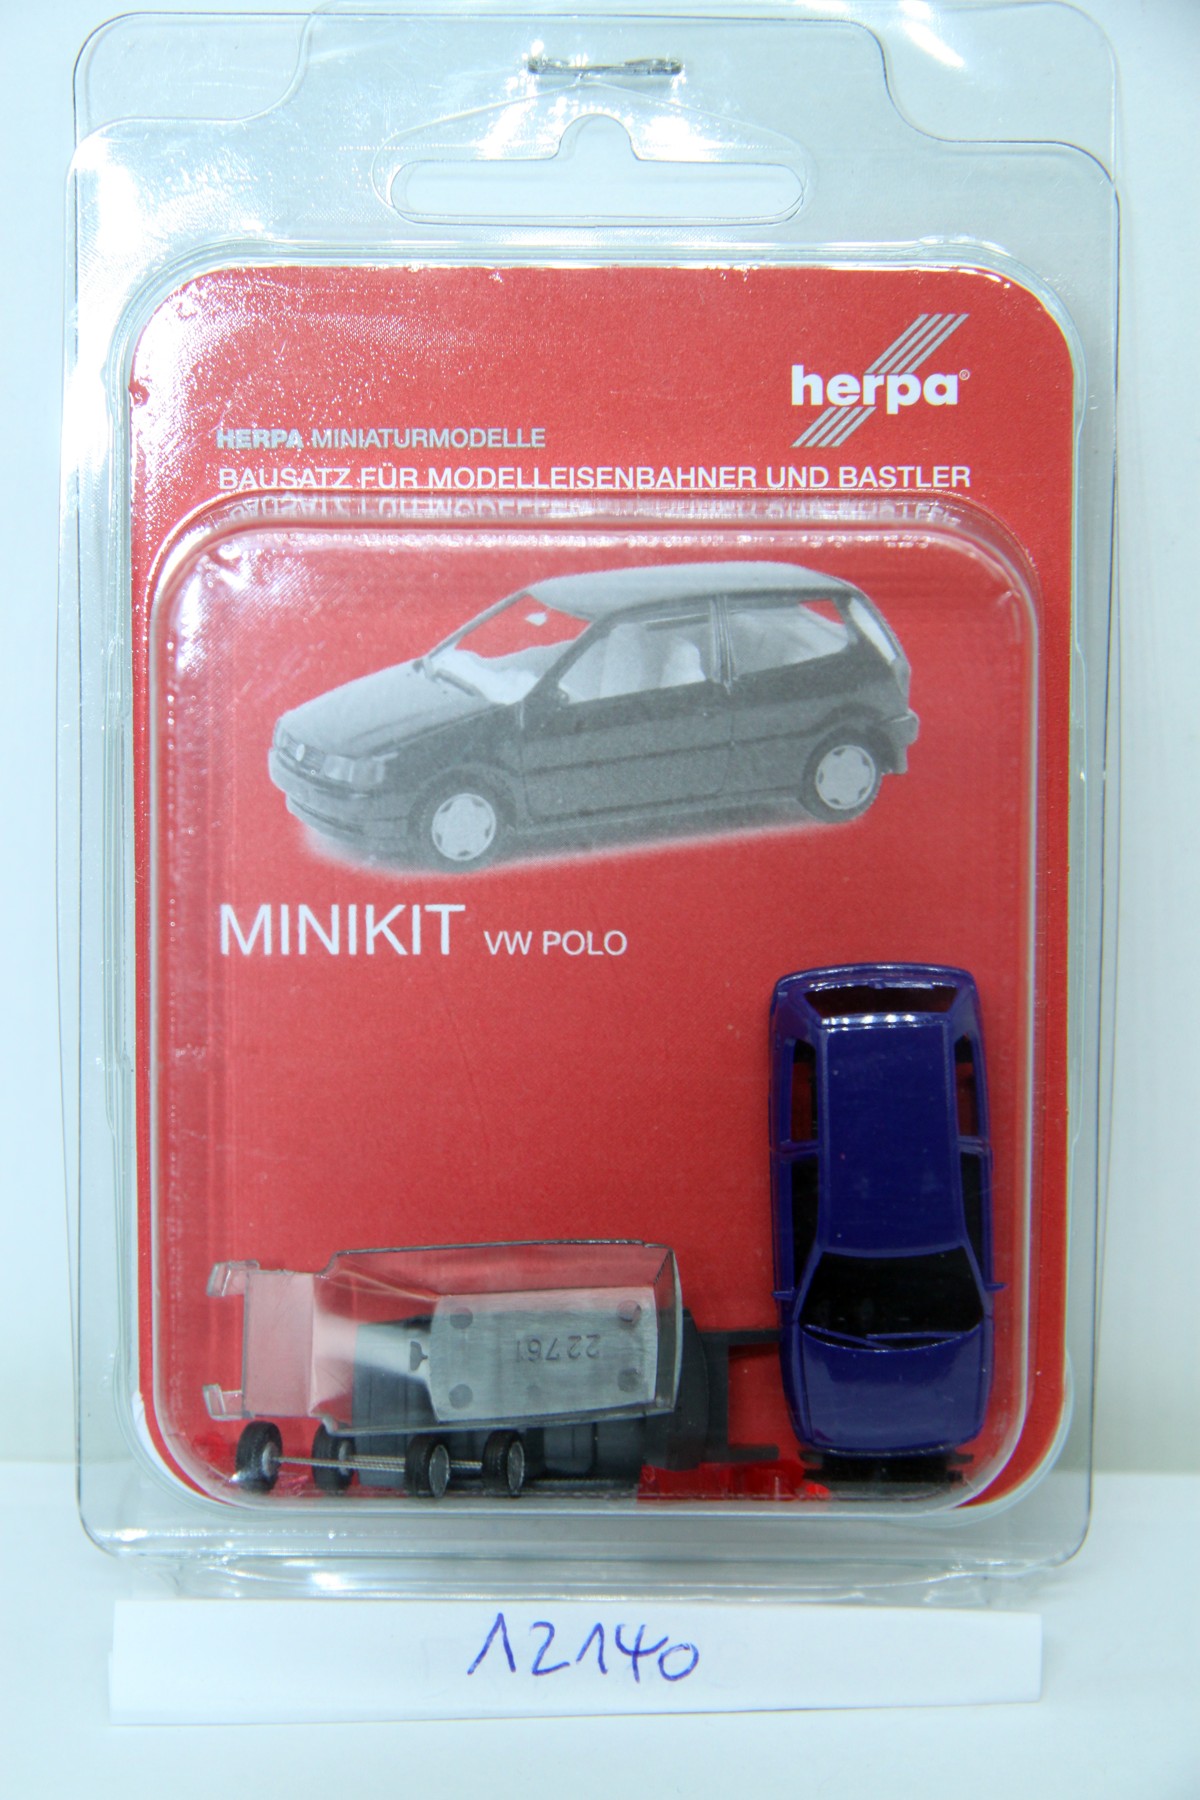 Herpa 012140, MiniKits, Volkswagen VW Polo, 2-door, blue, for H0 gauge, with original packaging.